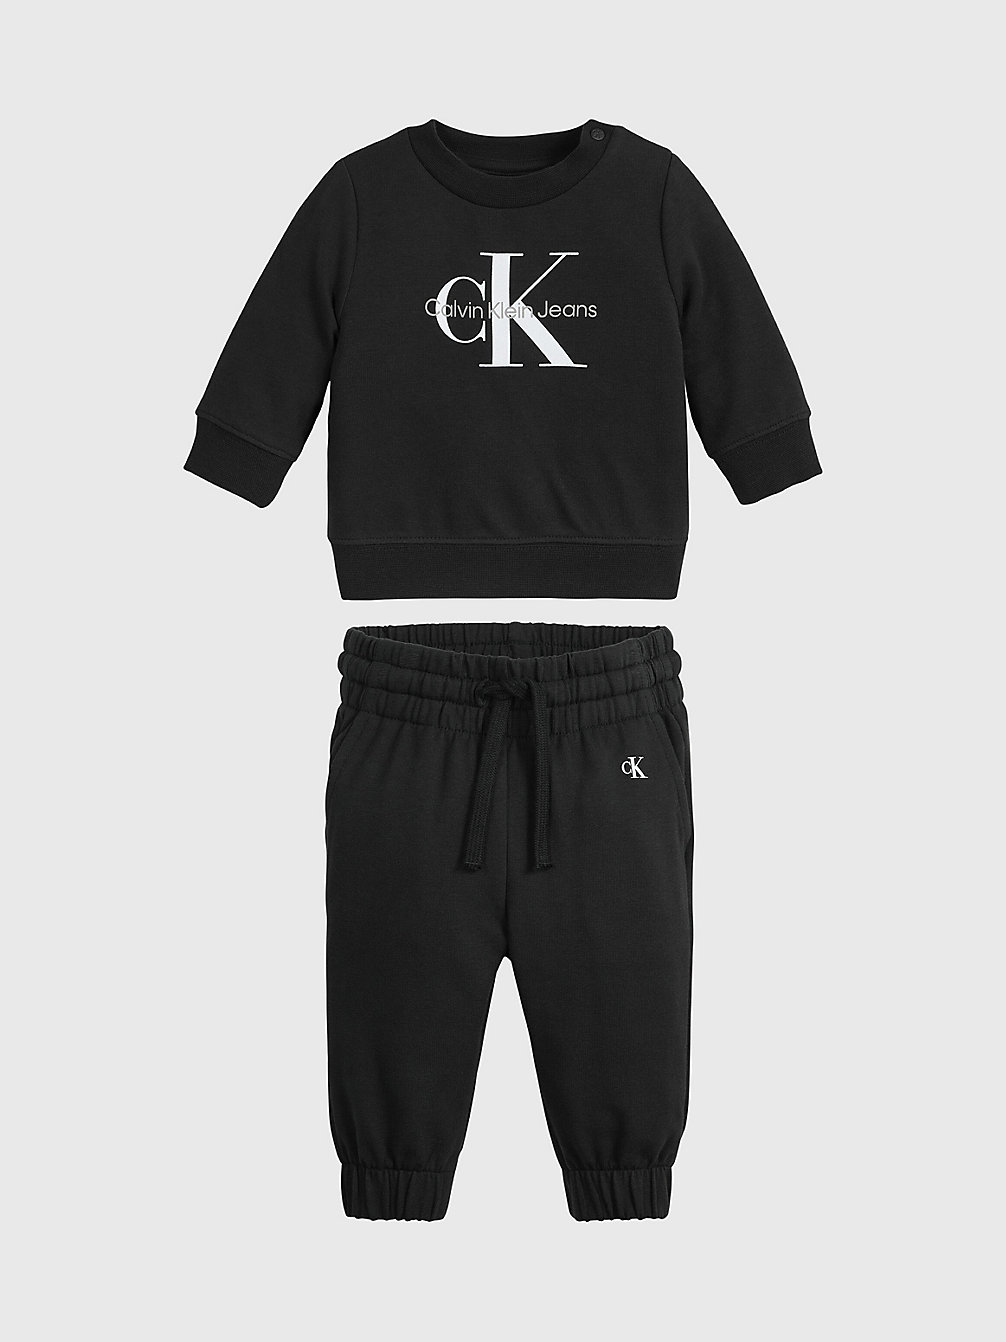 CK BLACK Newborn Logo Tracksuit undefined newborn Calvin Klein